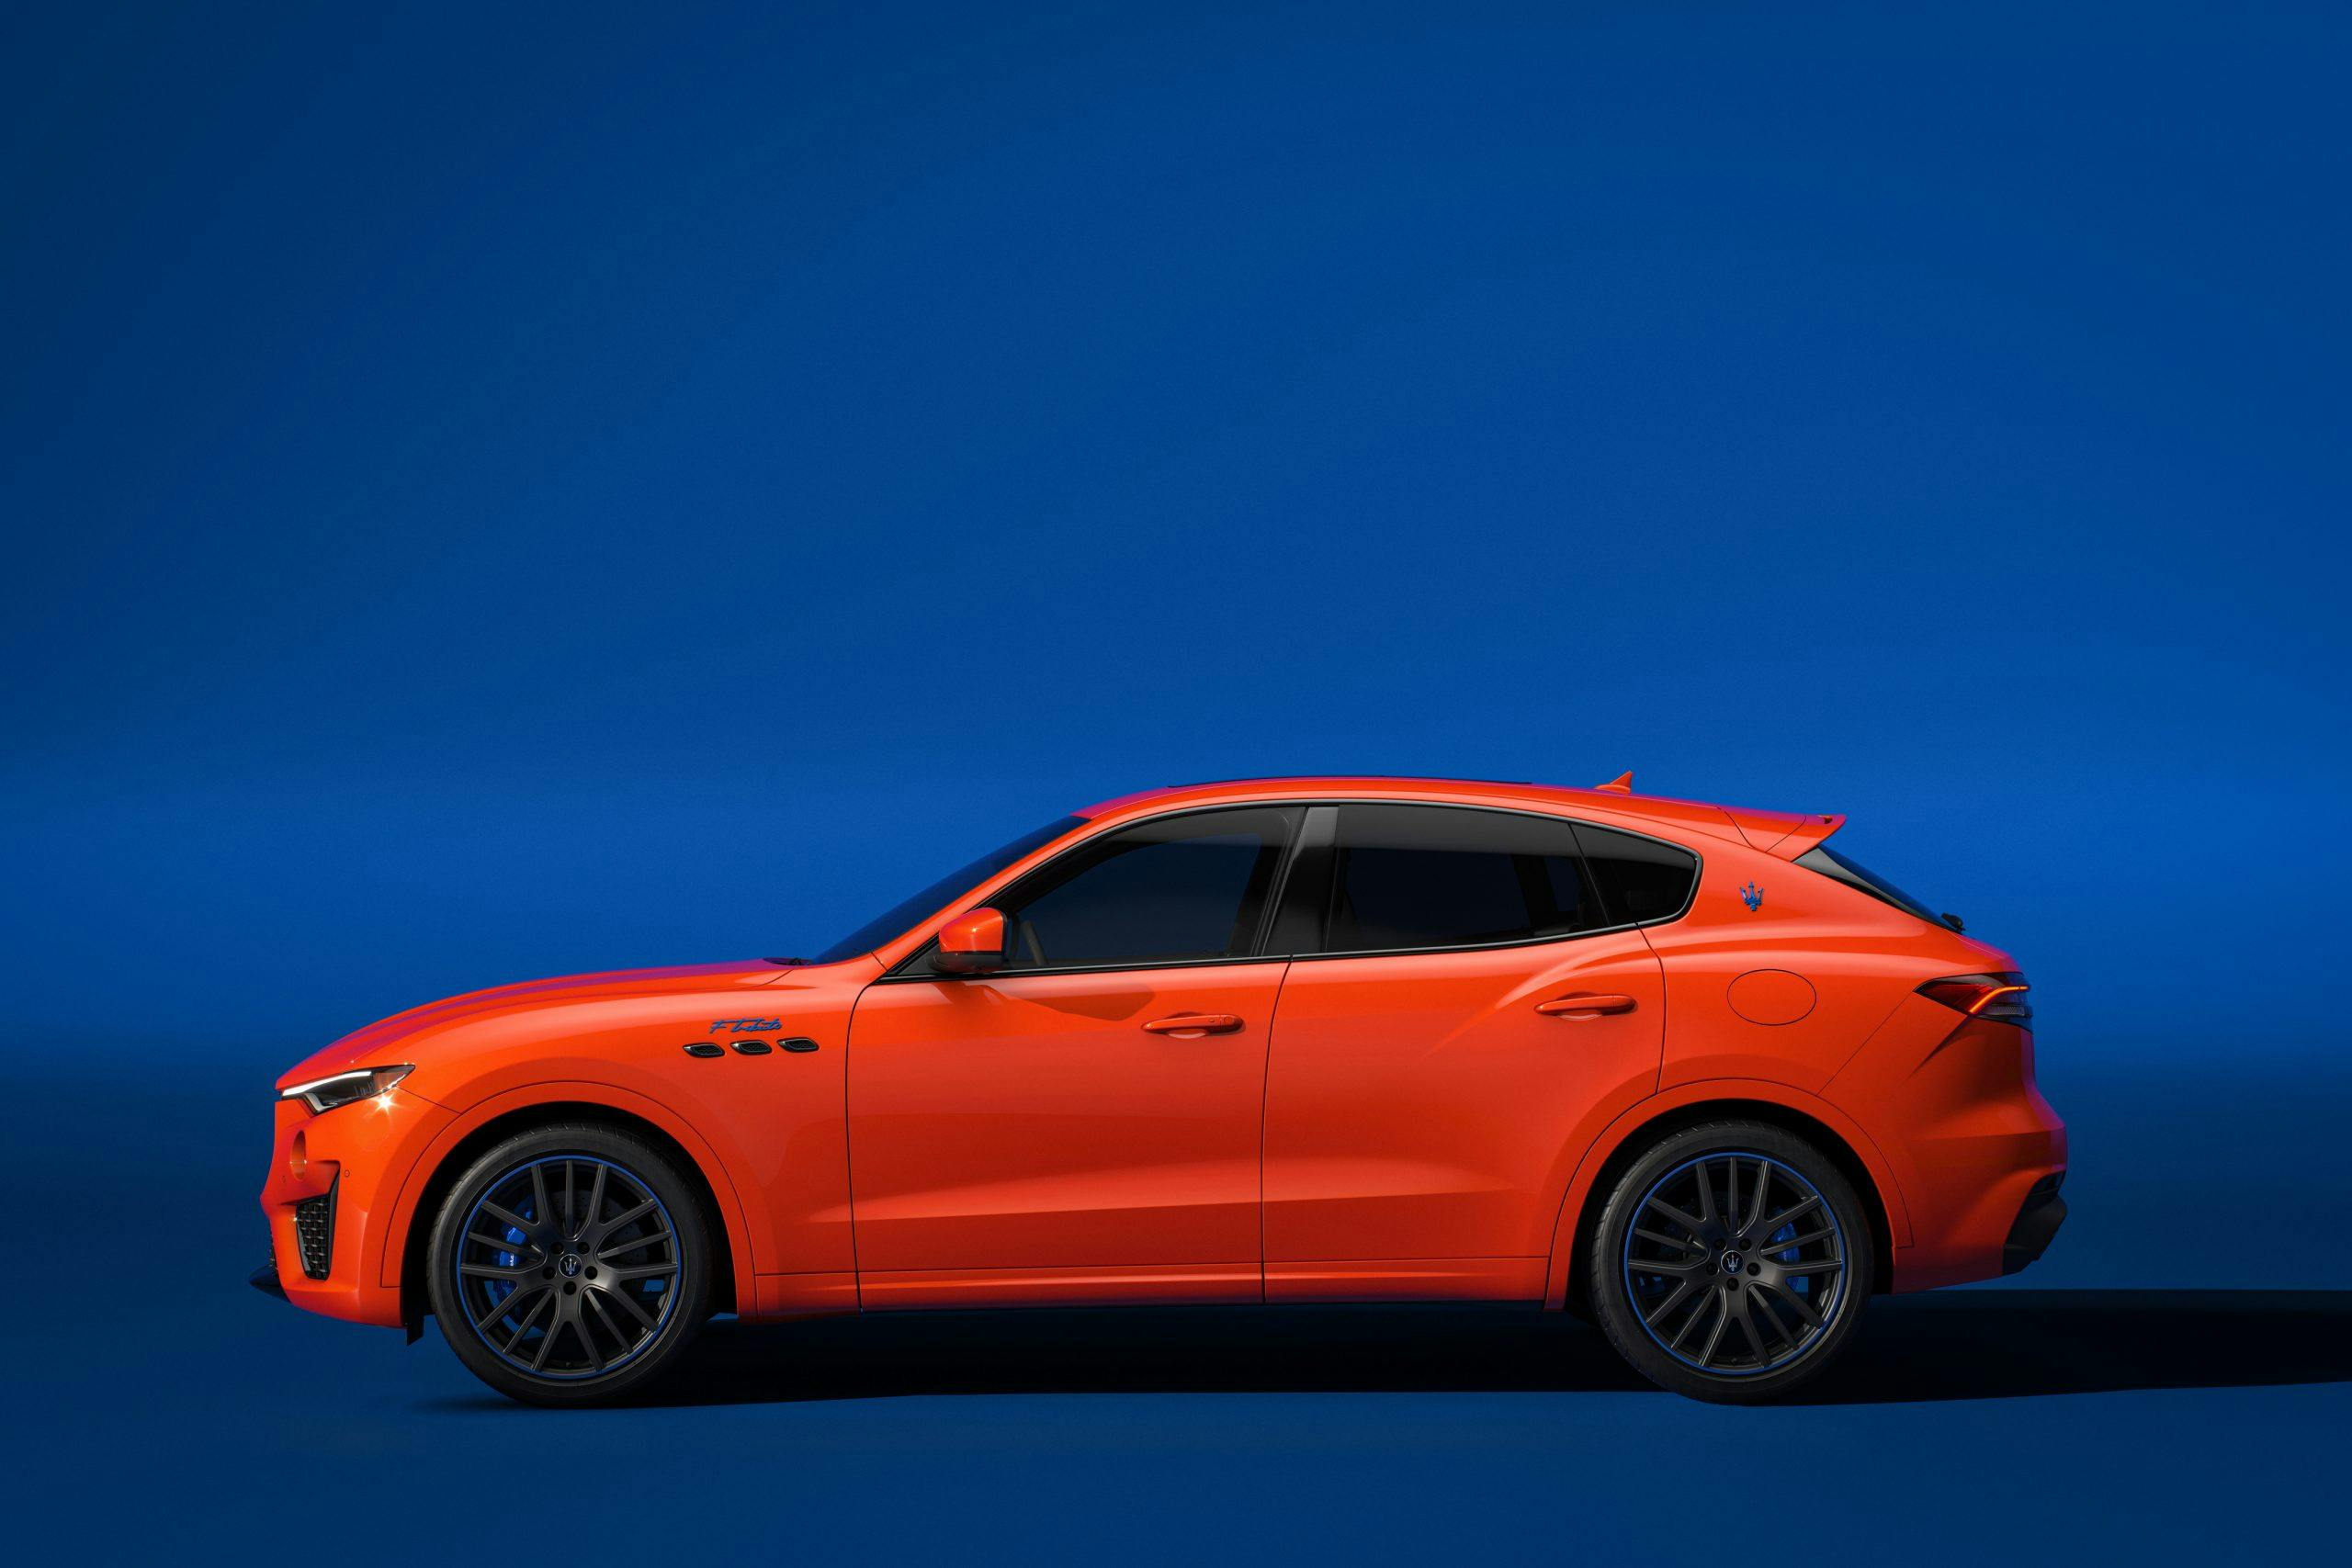 Maserati F Tributo Special Edition Levante exterior side profile orange